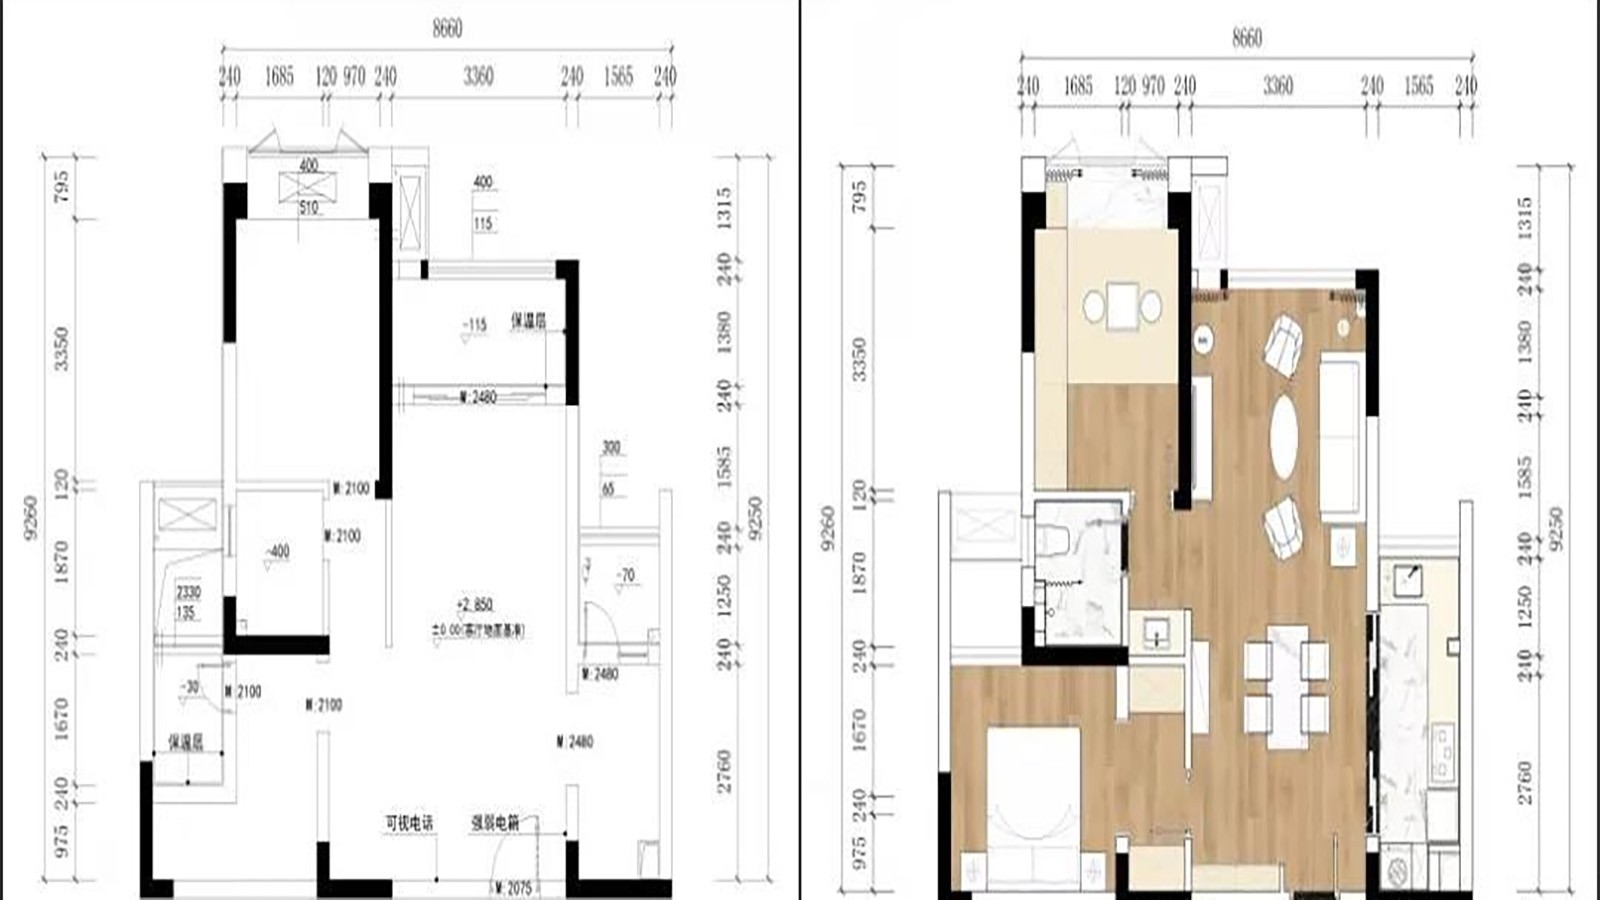 98现代三房装修效果图,四海逸家陈先生的新家装修案例效果图-美广网